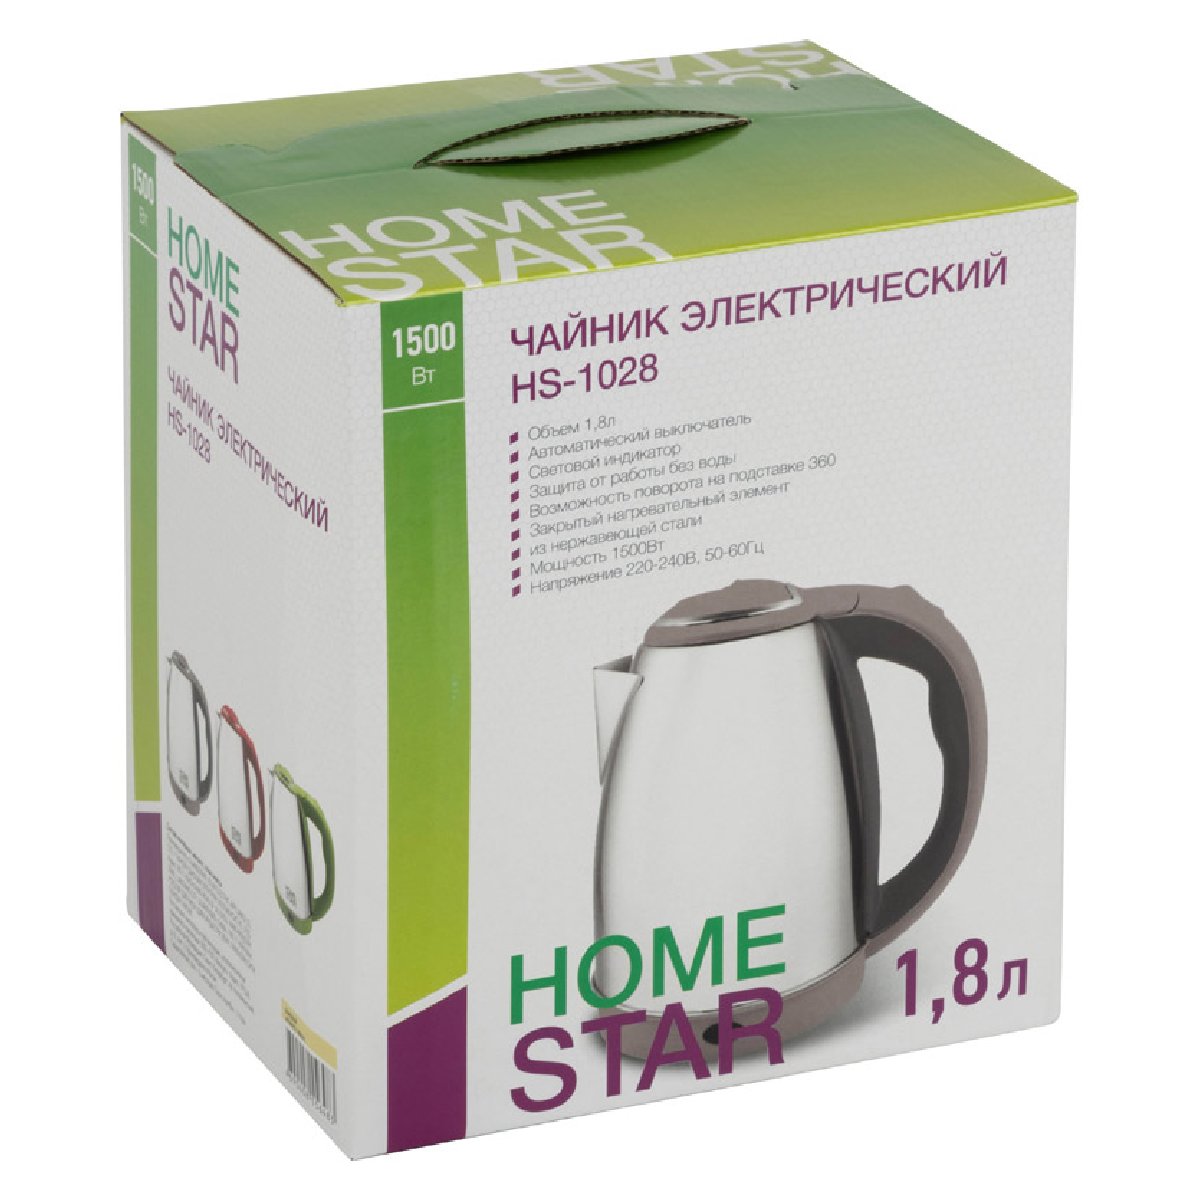 Чайник Homestar HS-1028 (1,8 л) стальной, бежевый (008202)